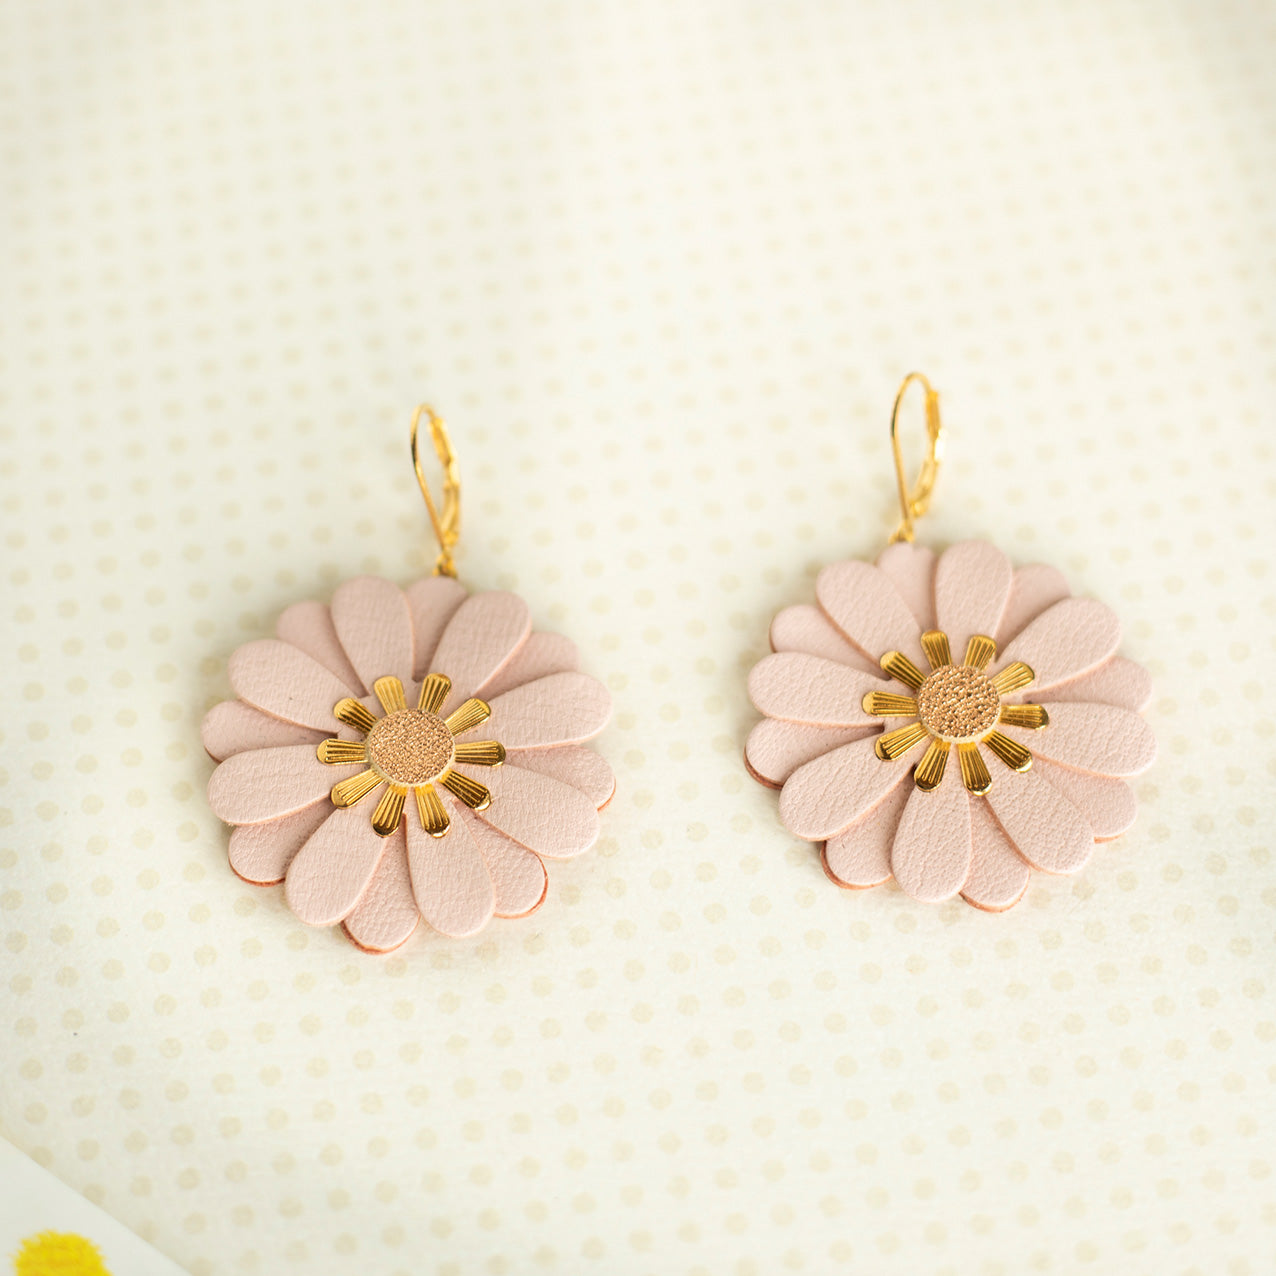 Zinnia flower earrings - pale pink leather